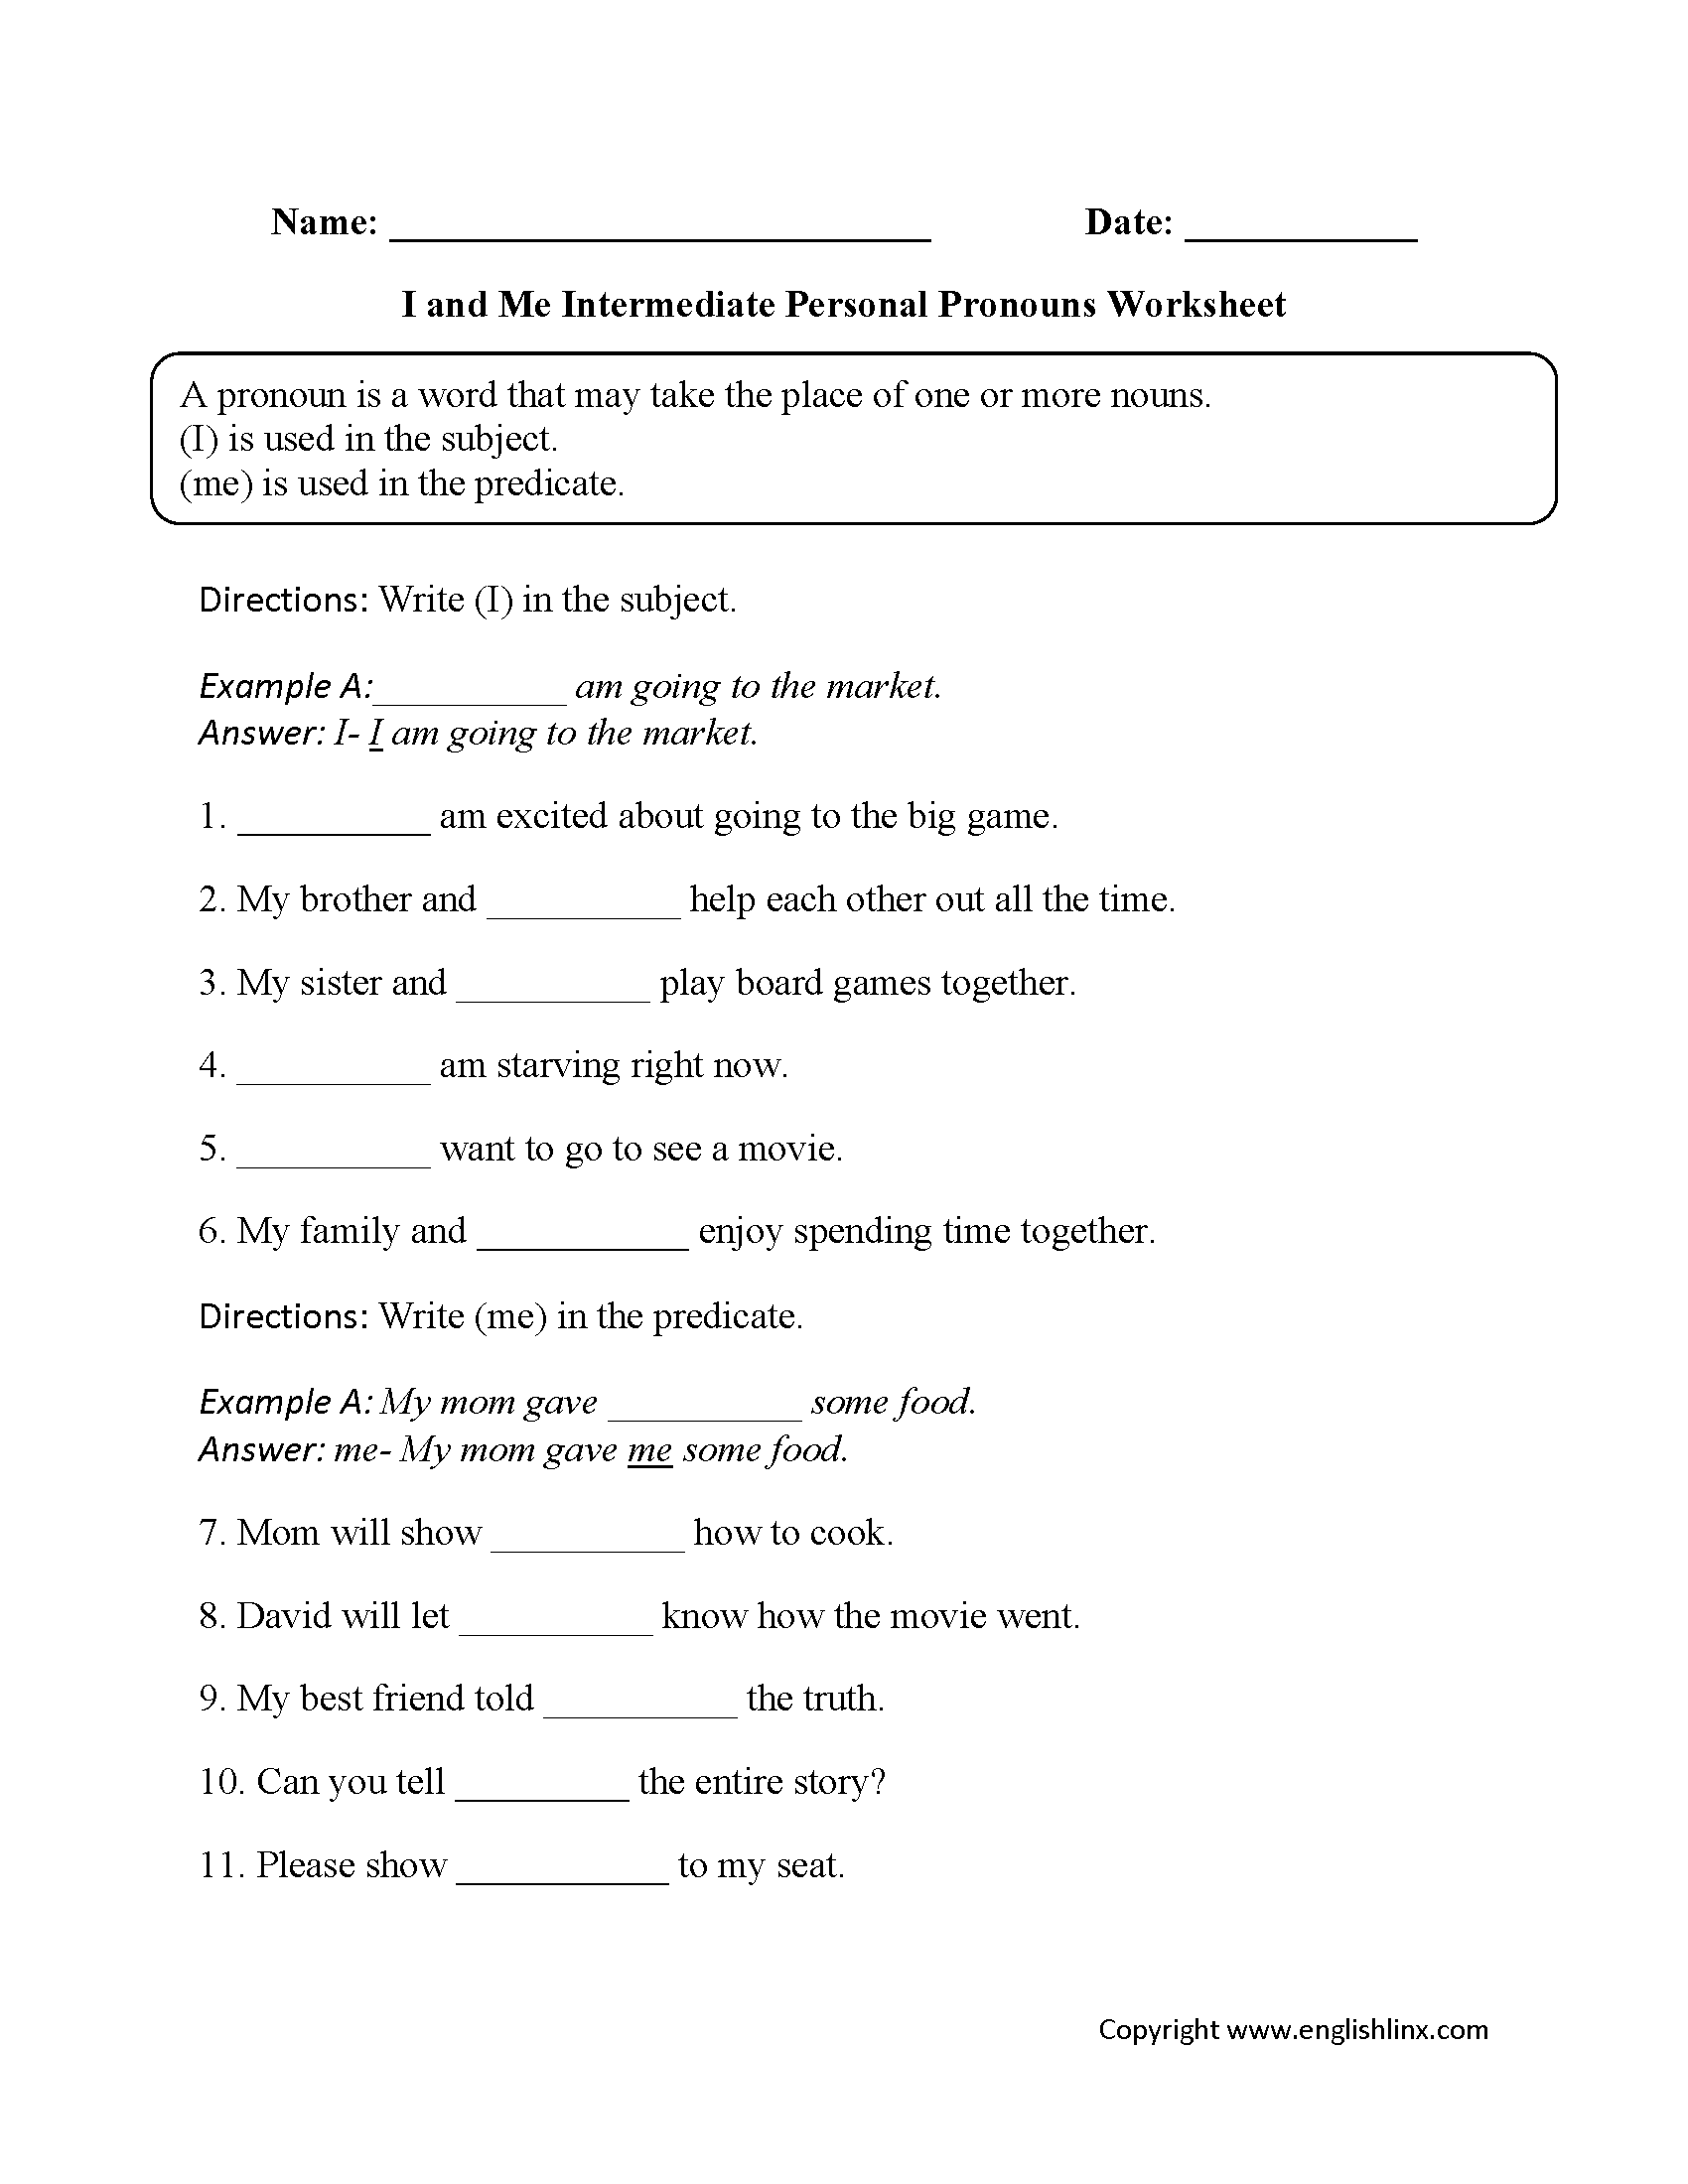 worksheet-subject-pronouns-in-spanish-worksheet-grass-fedjp-worksheet